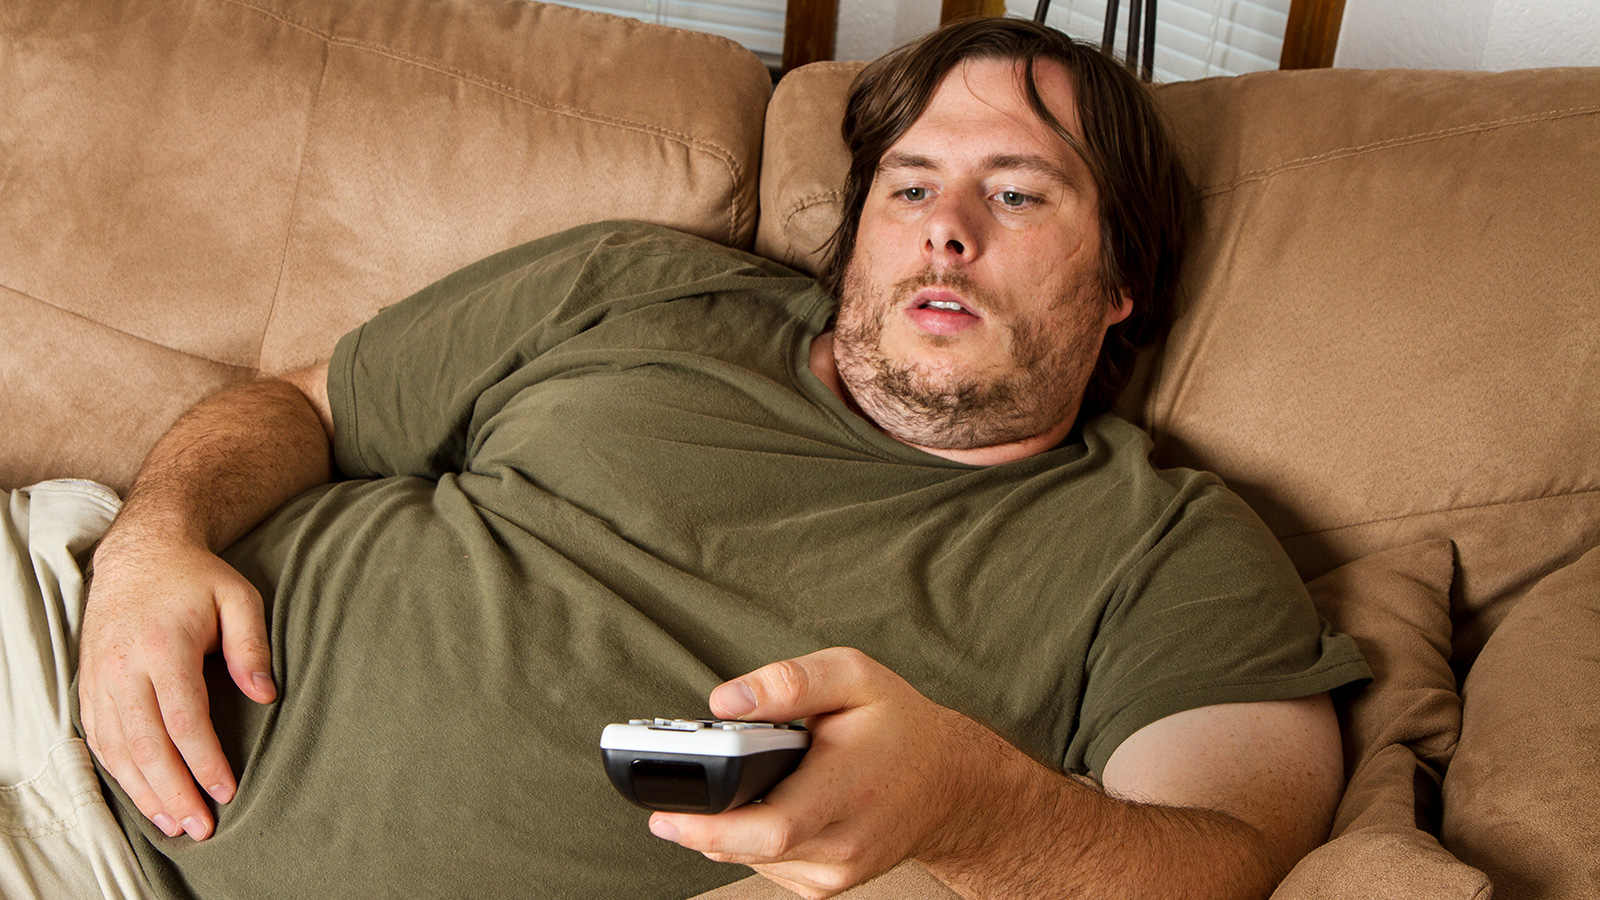 ‪الجلوس فترات طويلة لمشاهدة التلفاز قد يسبب السمنة (غيتي)‬ الجلوس فترات طويلة لمشاهدة التلفاز قد يسبب السمنة (غيتي)